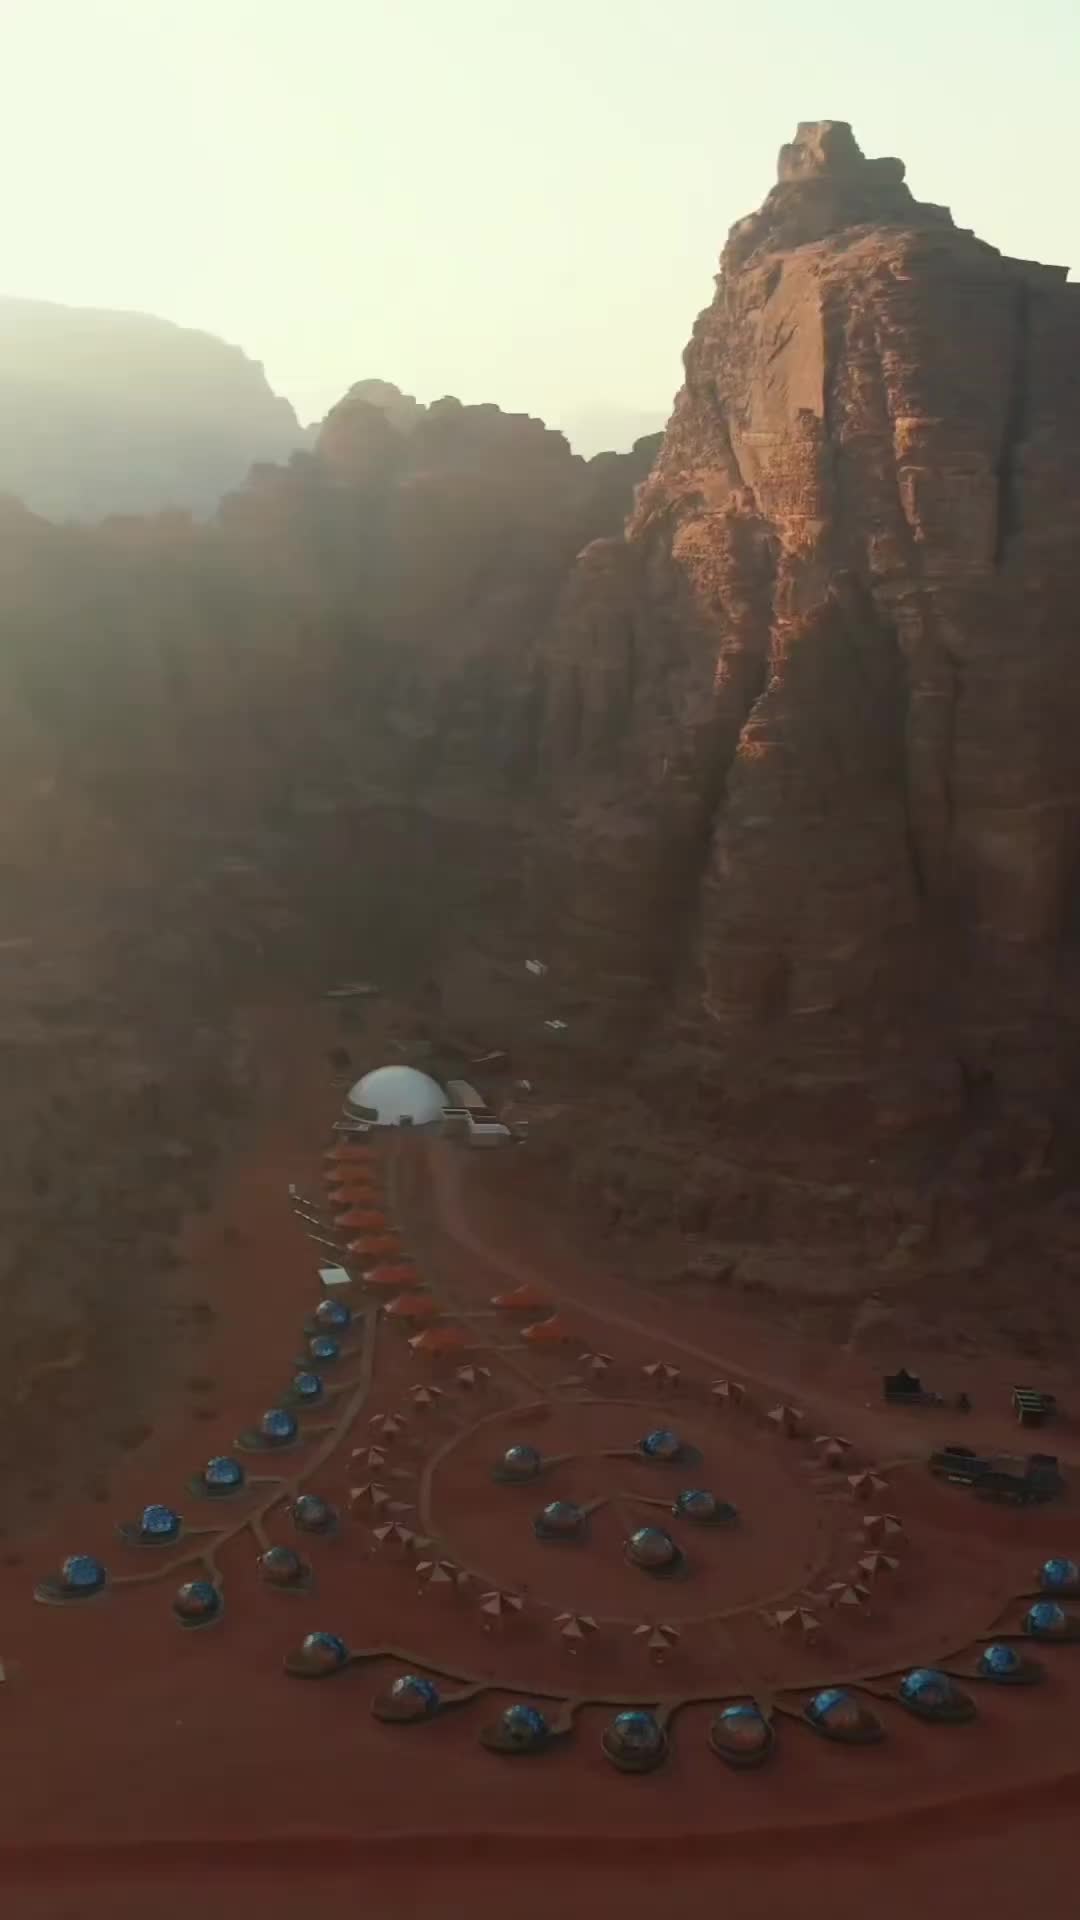 Martian-Like Adventure in Wadi Rum Desert, Jordan